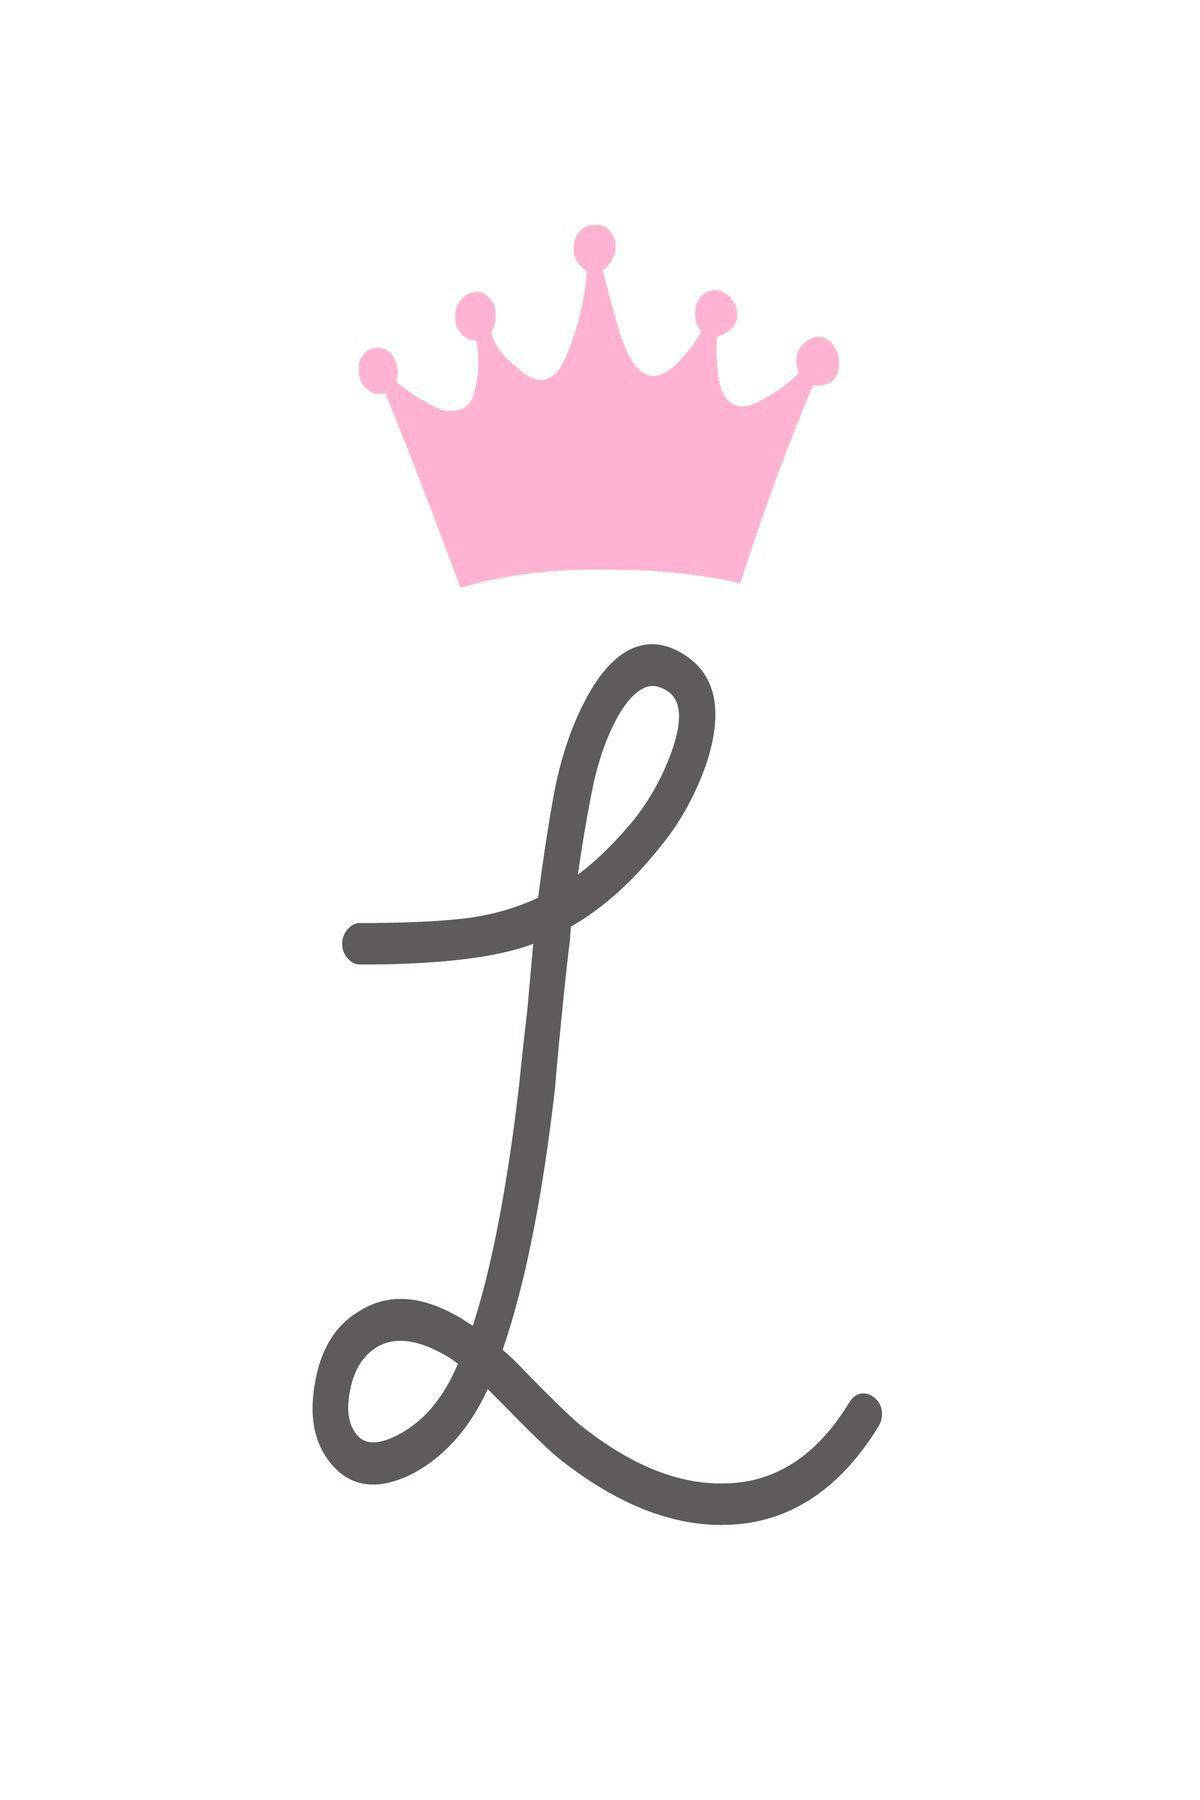 Cursive Letter L Pink Crown Background